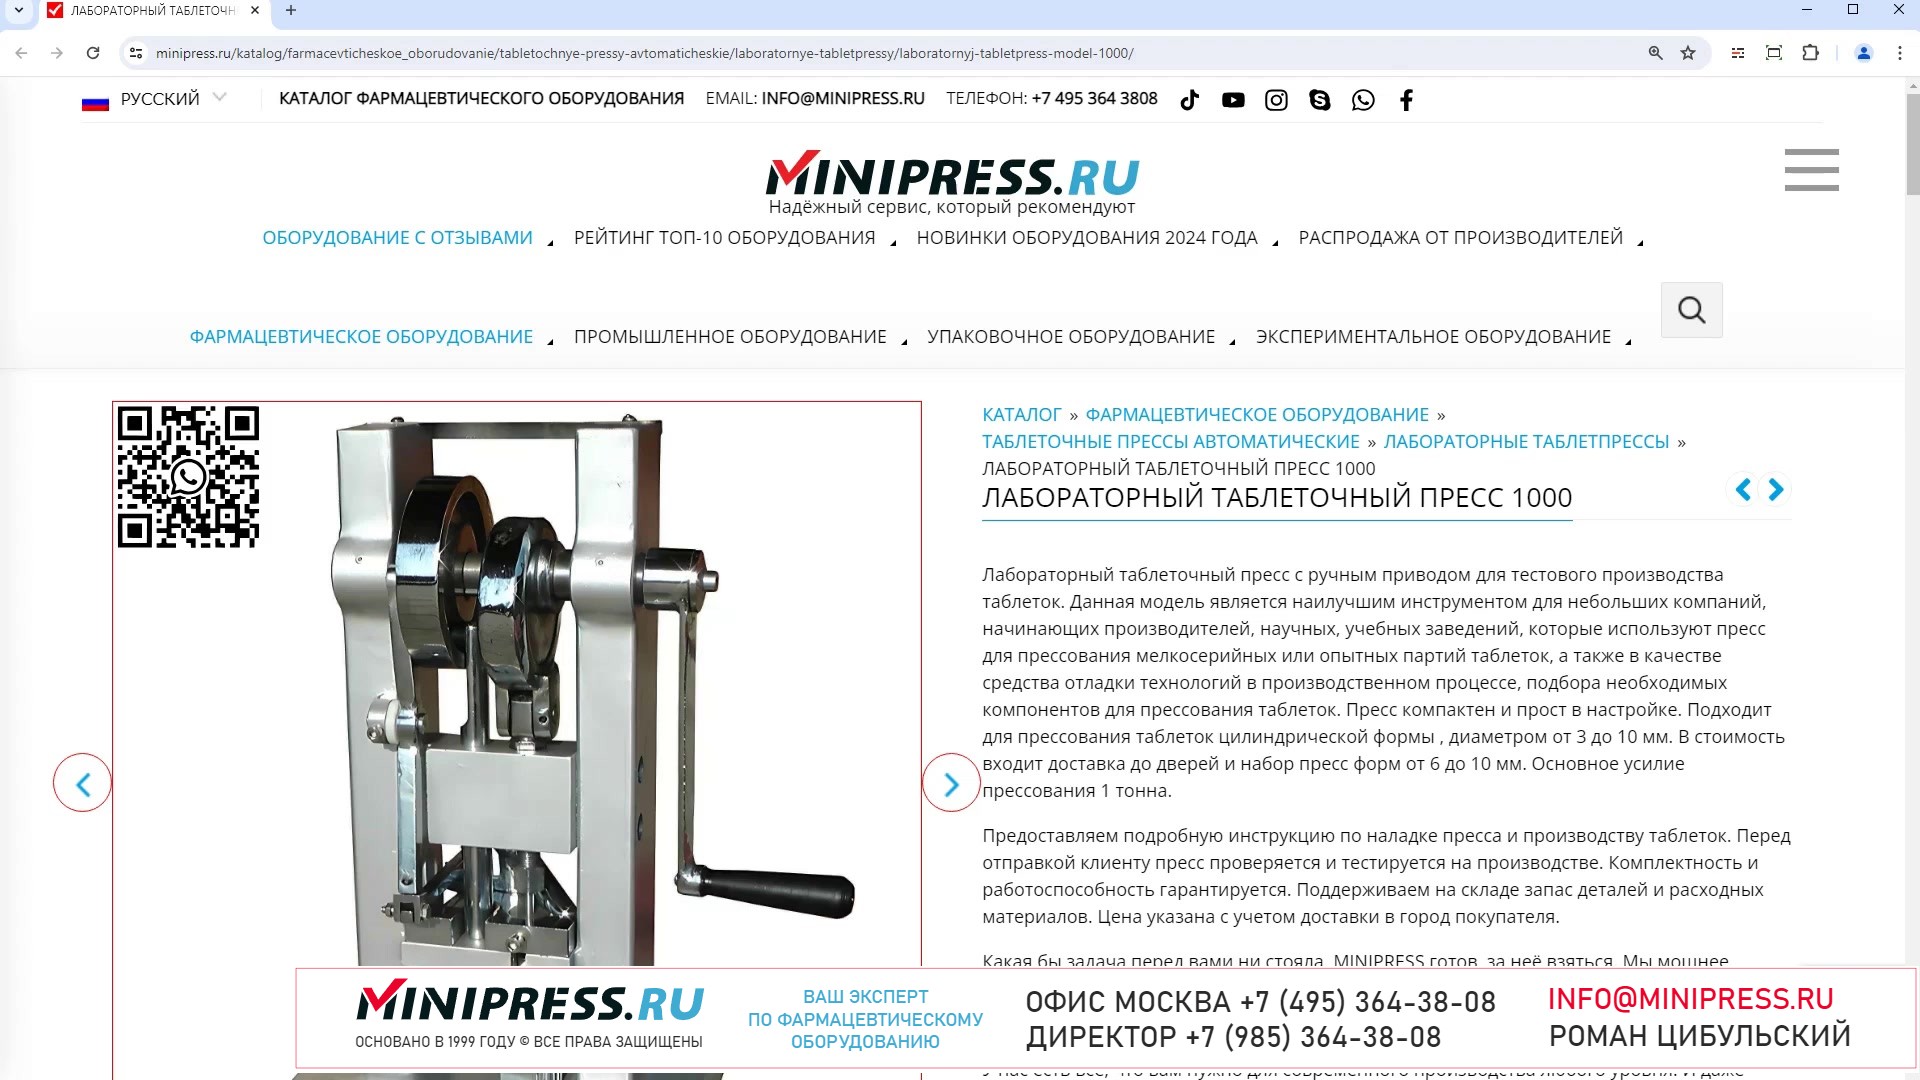 Minipress.ru Лабораторный таблеточный пресс 1000